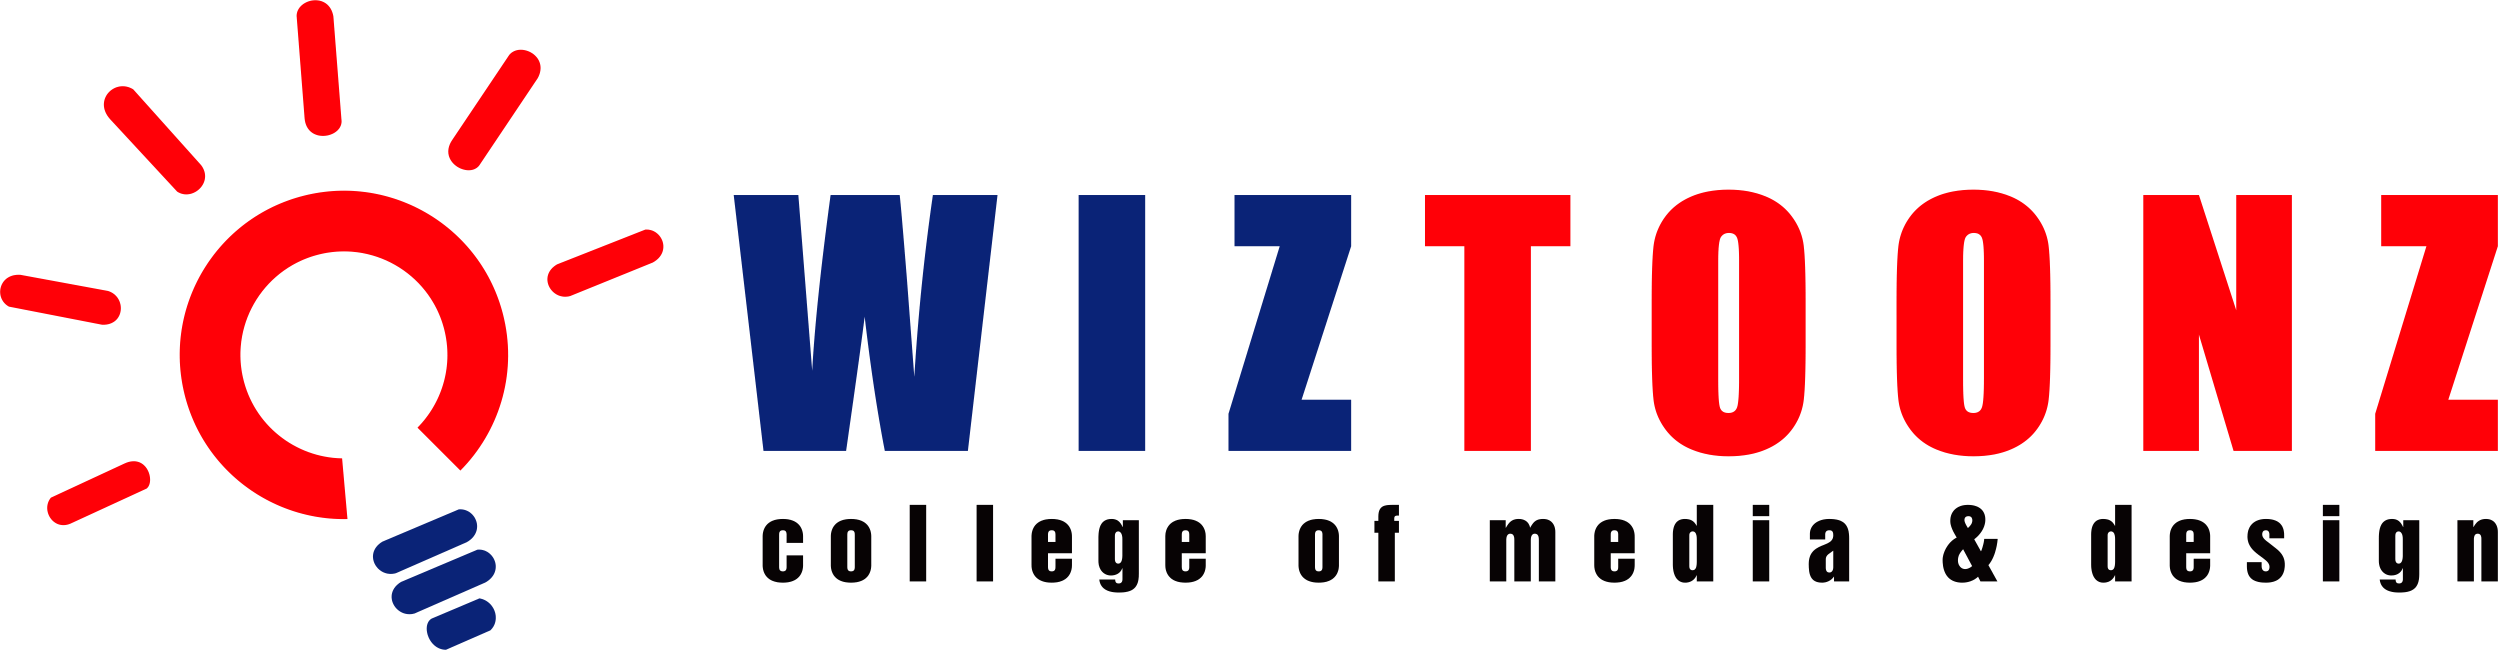 Wiztoonz Animation Academy, Bangalore - Courses & Fee 2019